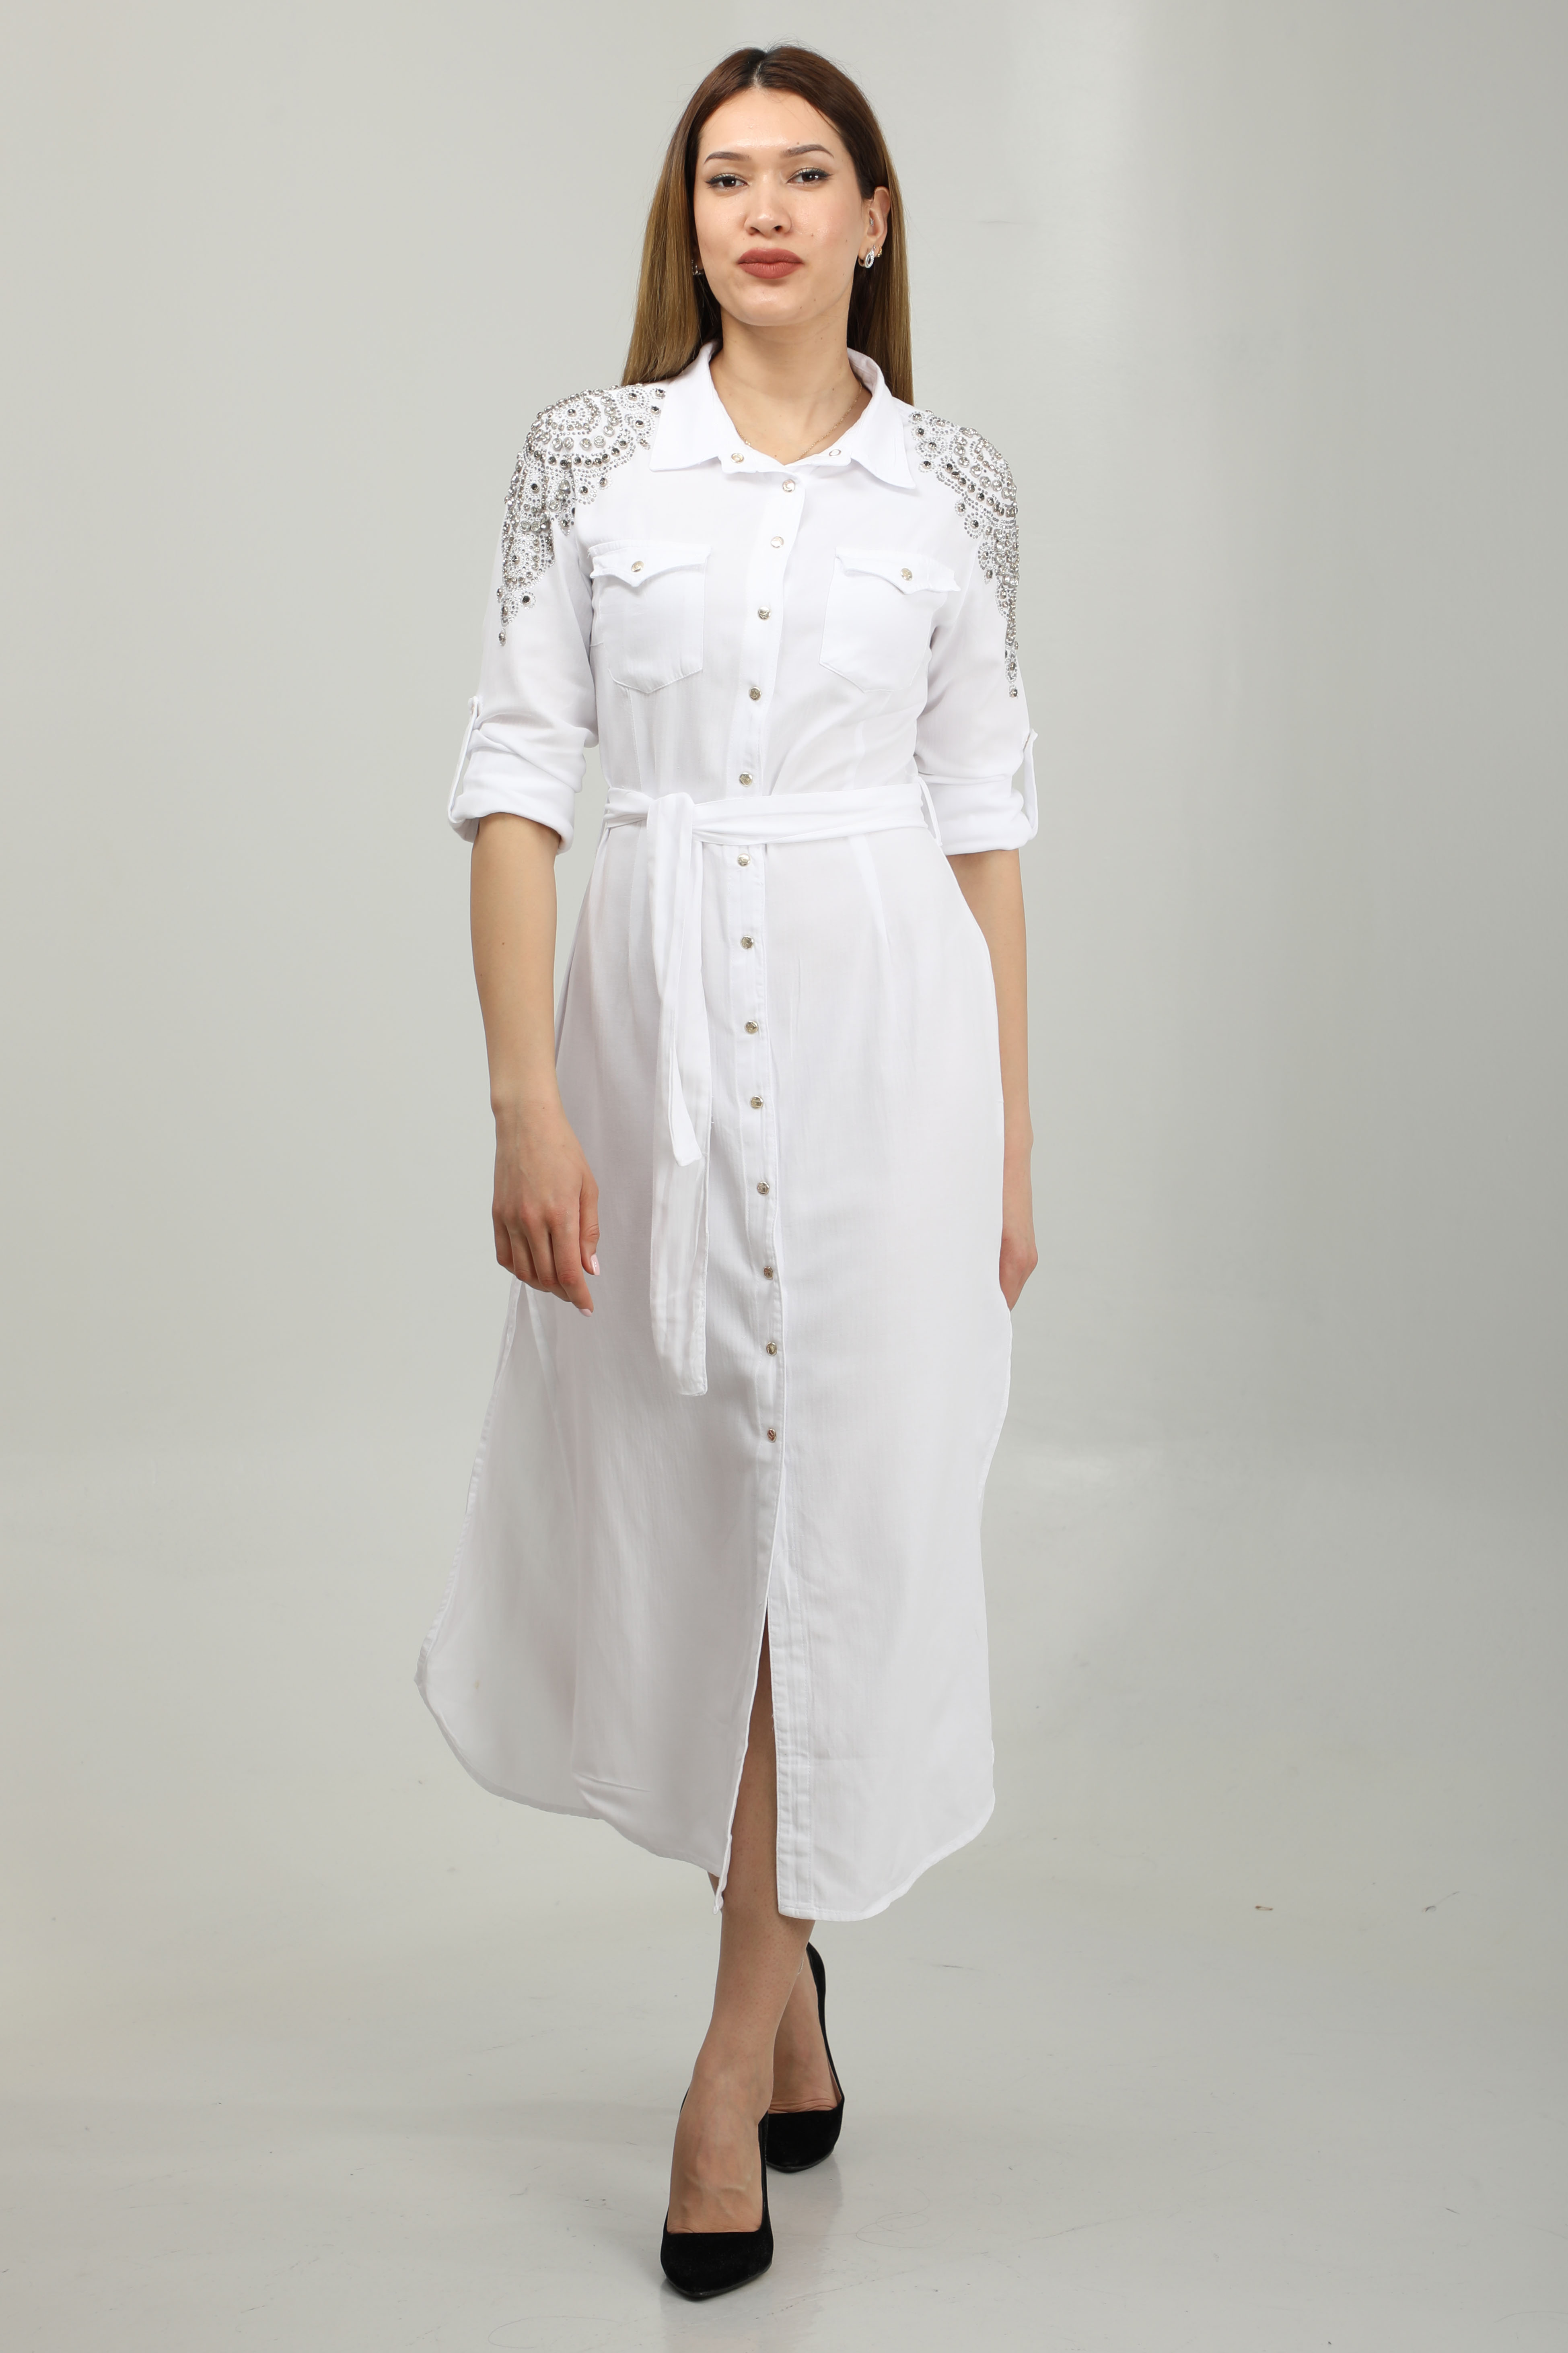 WHITE SHOULDER PATTERNED DRESS